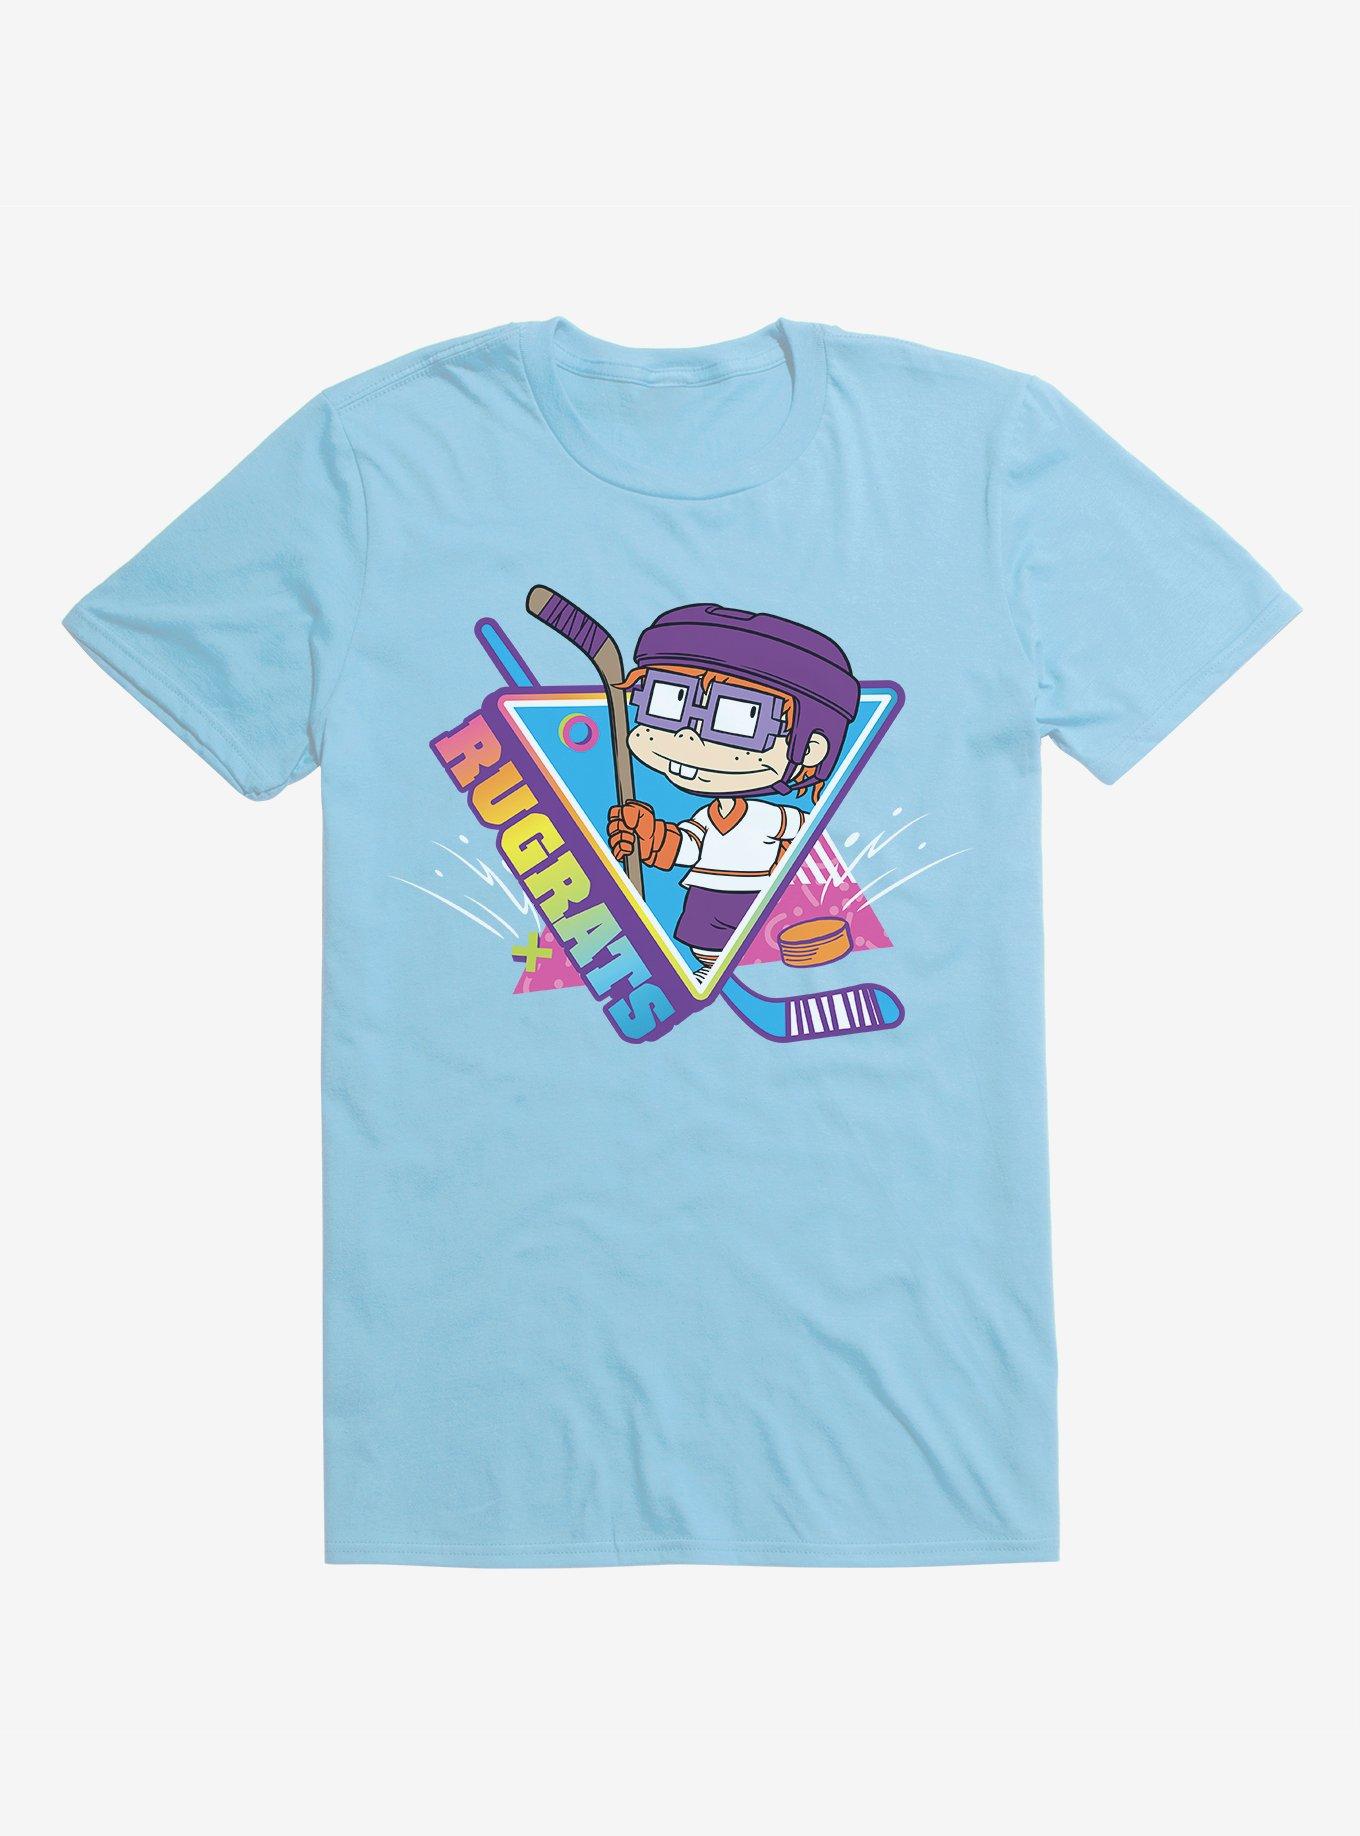 Rugrats Chuckie Goal T-Shirt, , hi-res